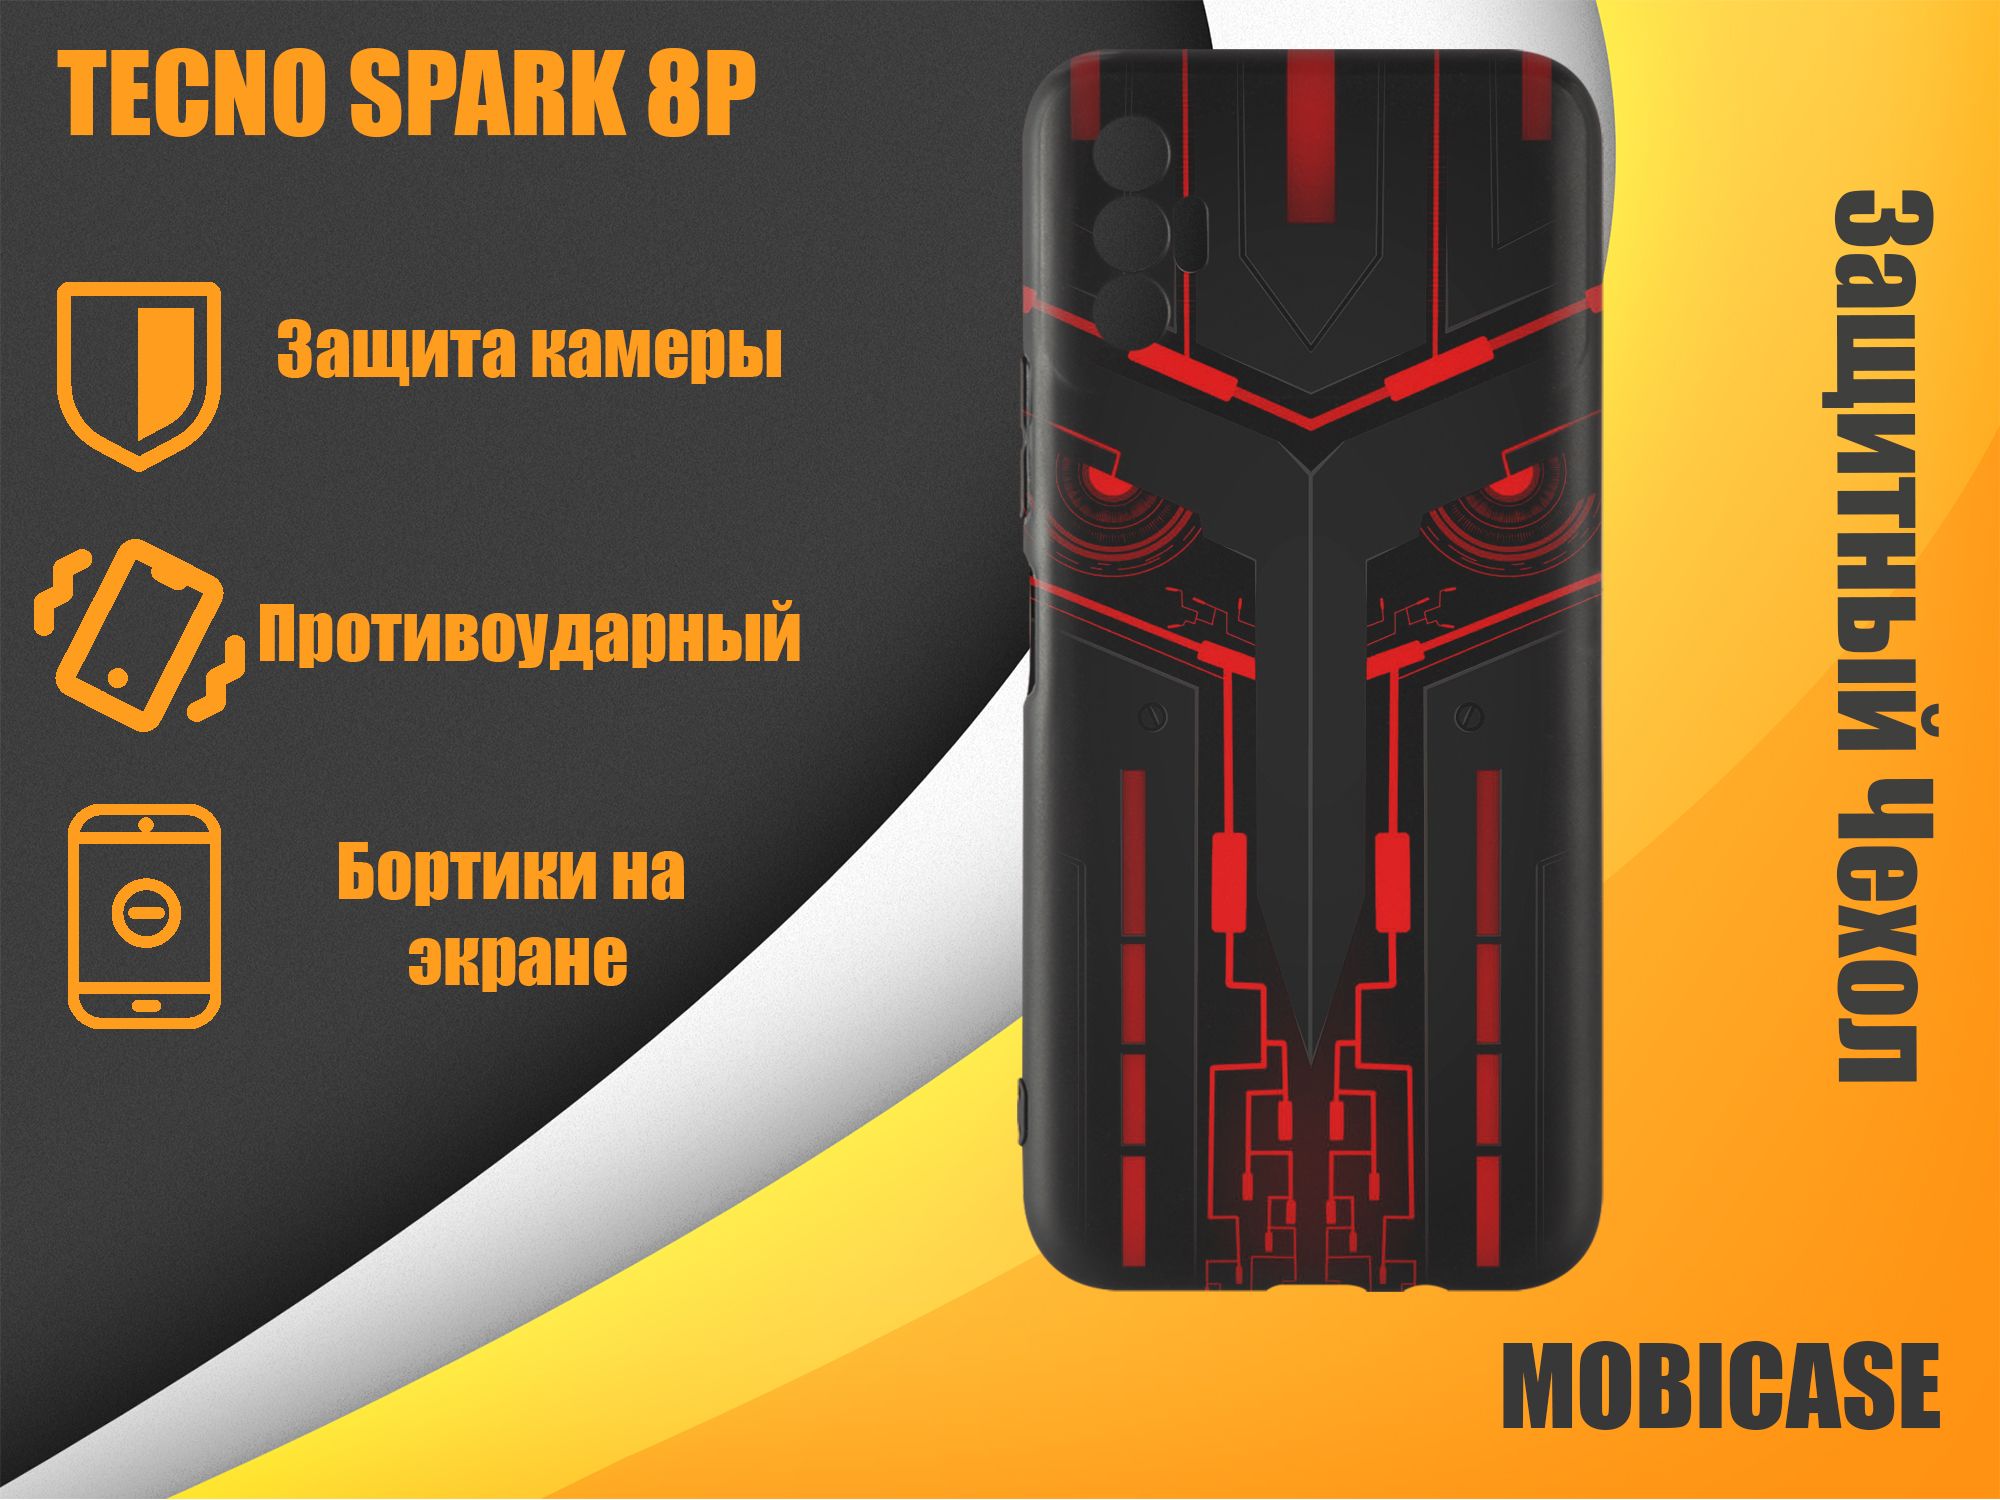 Техно Спарк 8п. Techno Spark 8p. Тэхно Спарк 8 п. Tecno Spark 20 Pro чехол.